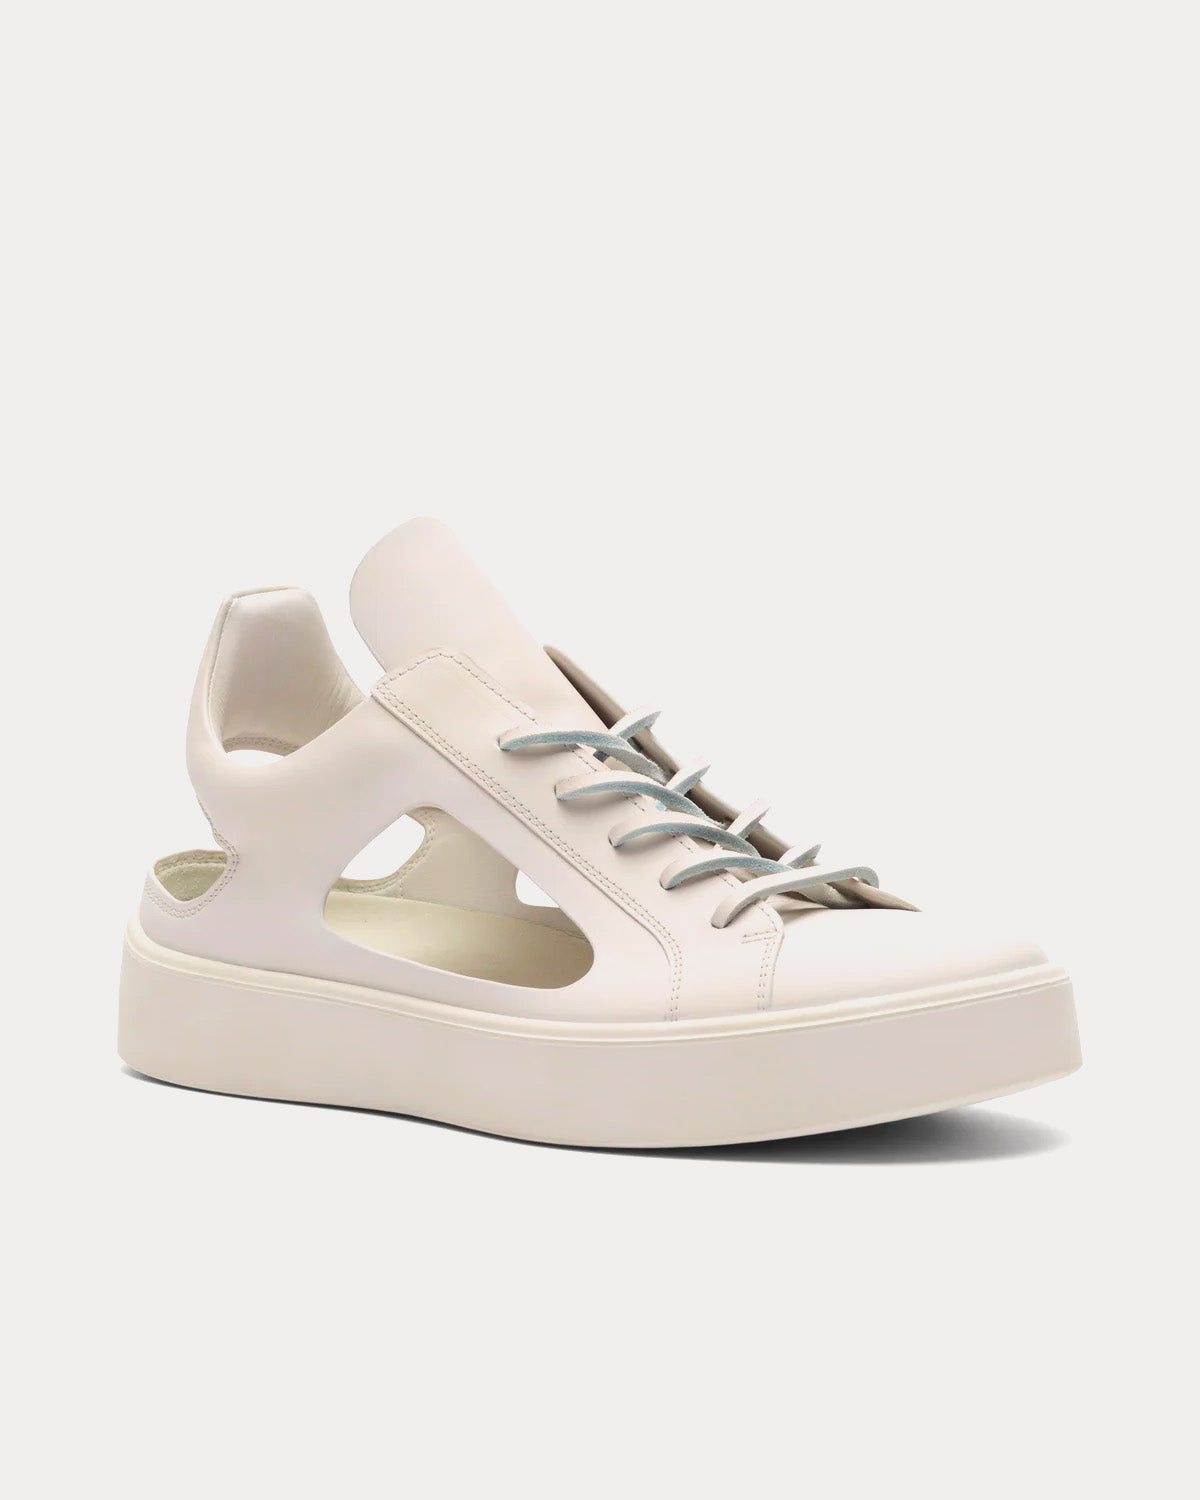 At.Kollektive - Kostas Murkudis Cut Out White Low Top Sneakers